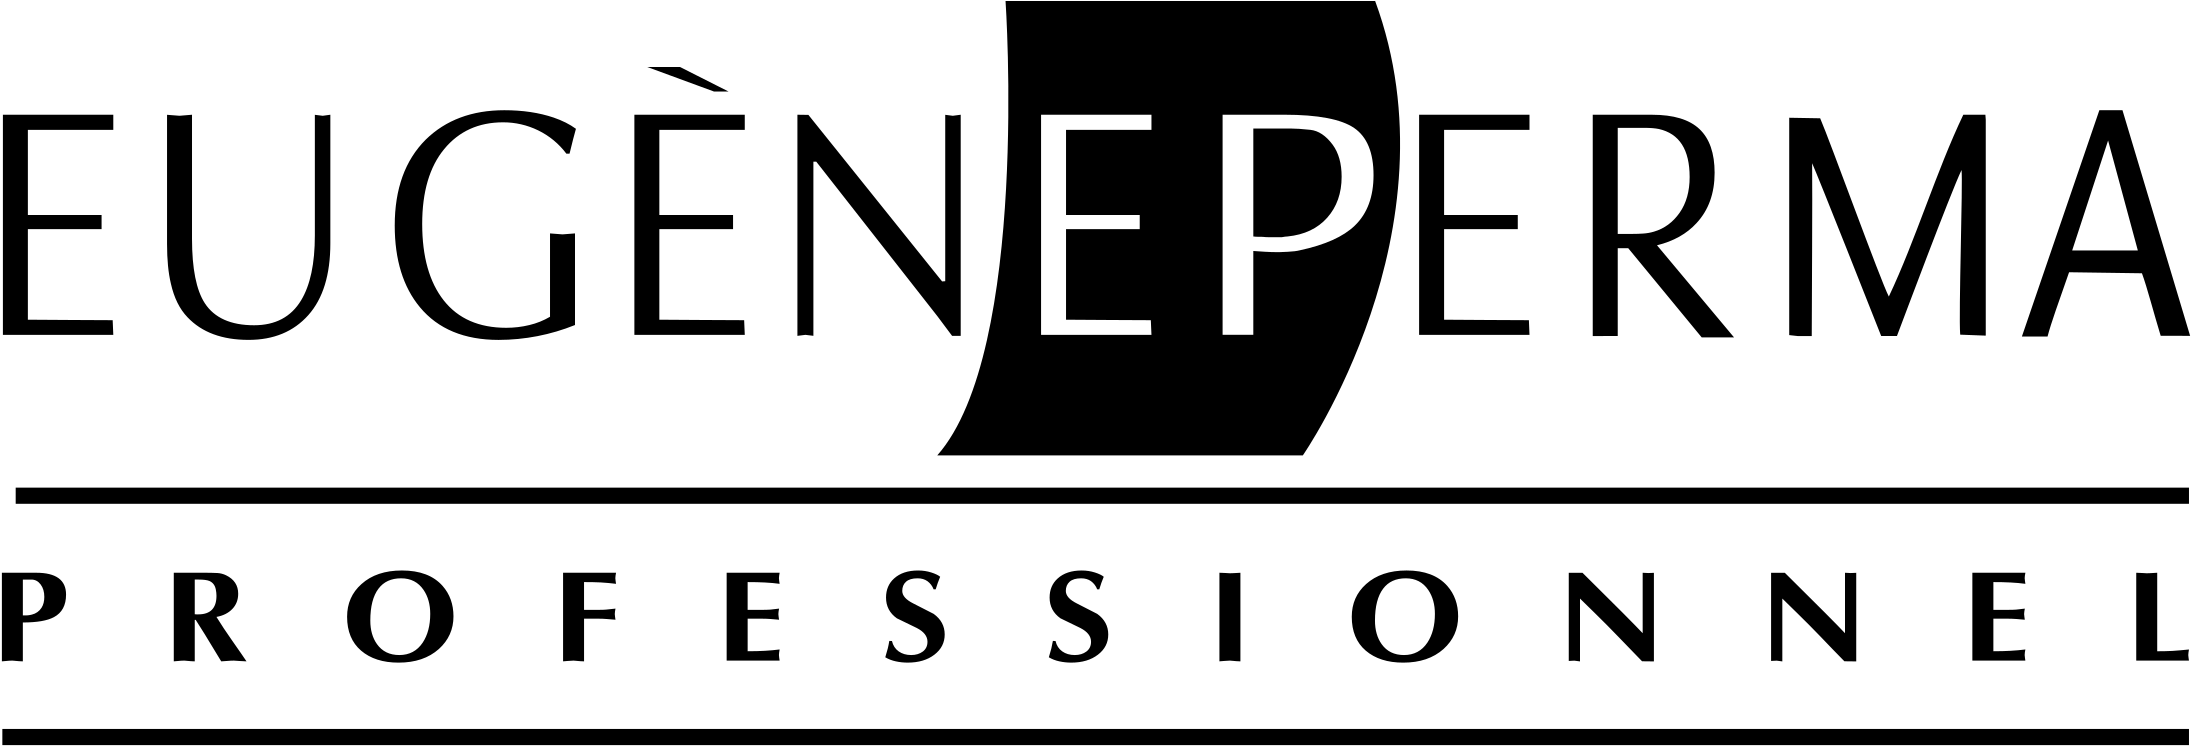 Eugene Perma Logo Png Transparent - Institut Supérieur Du Commerce De Paris Clipart (2400x2400), Png Download